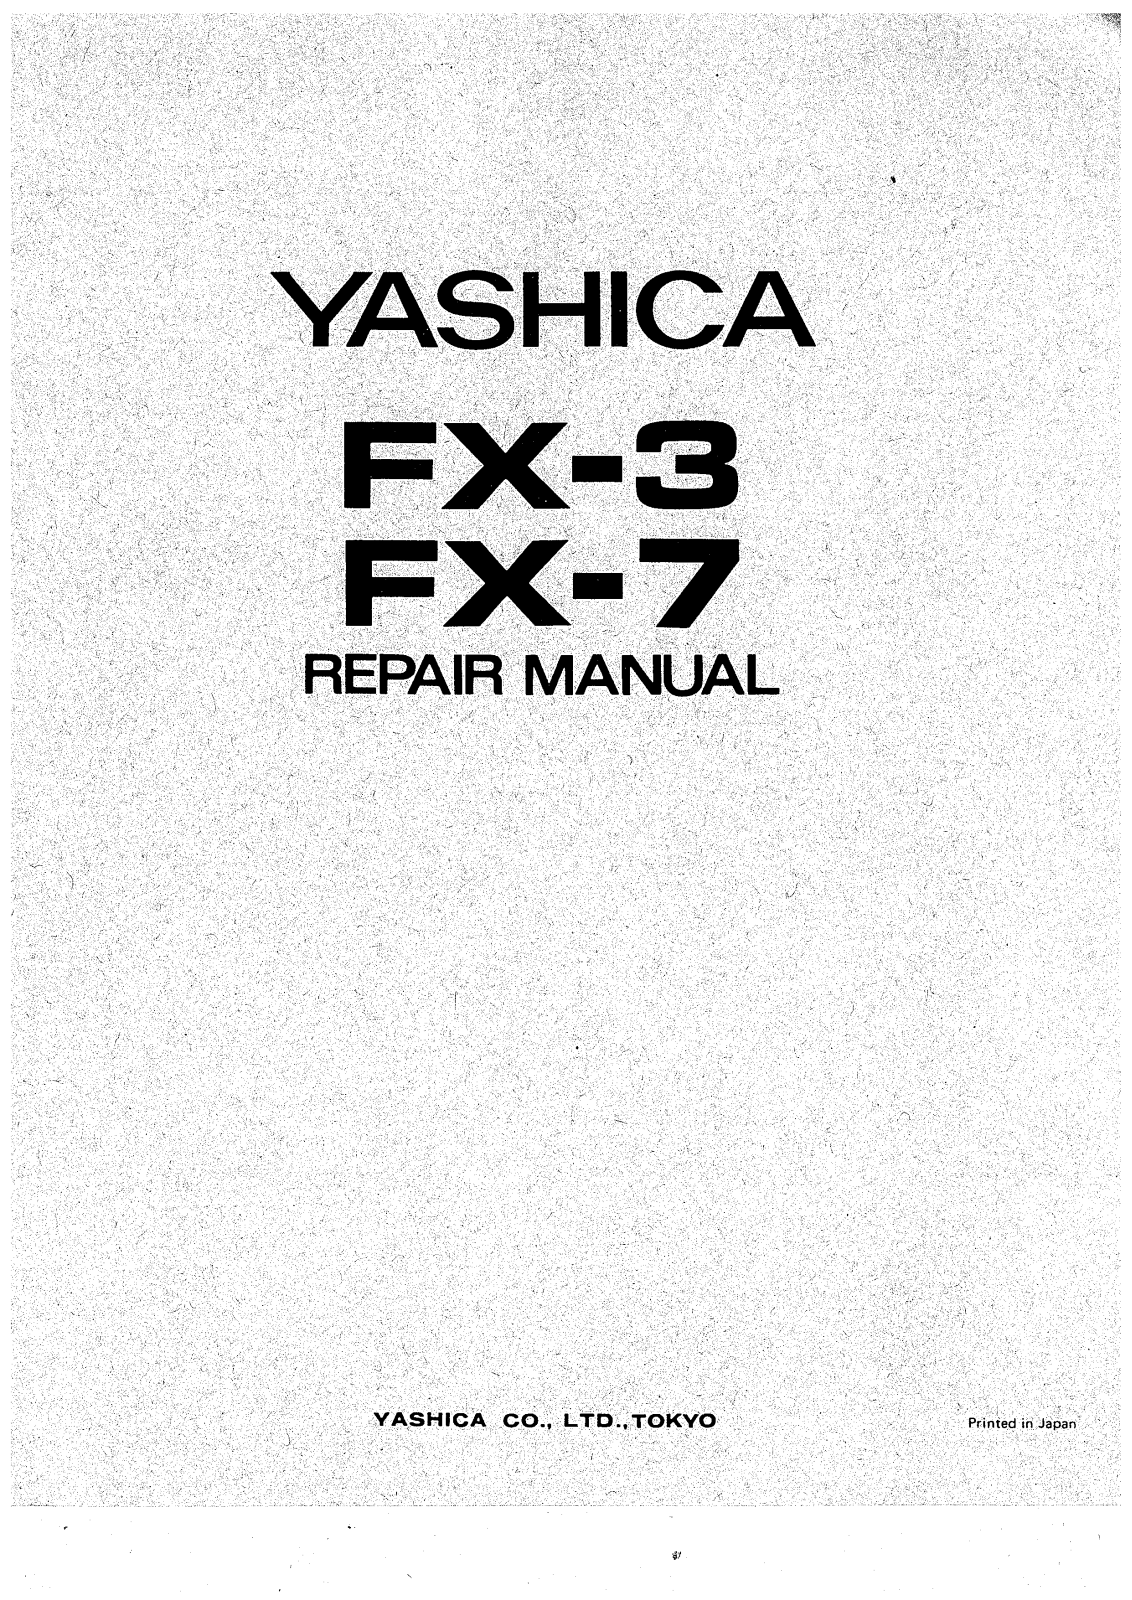 Yashica FX-3 Repair Manual